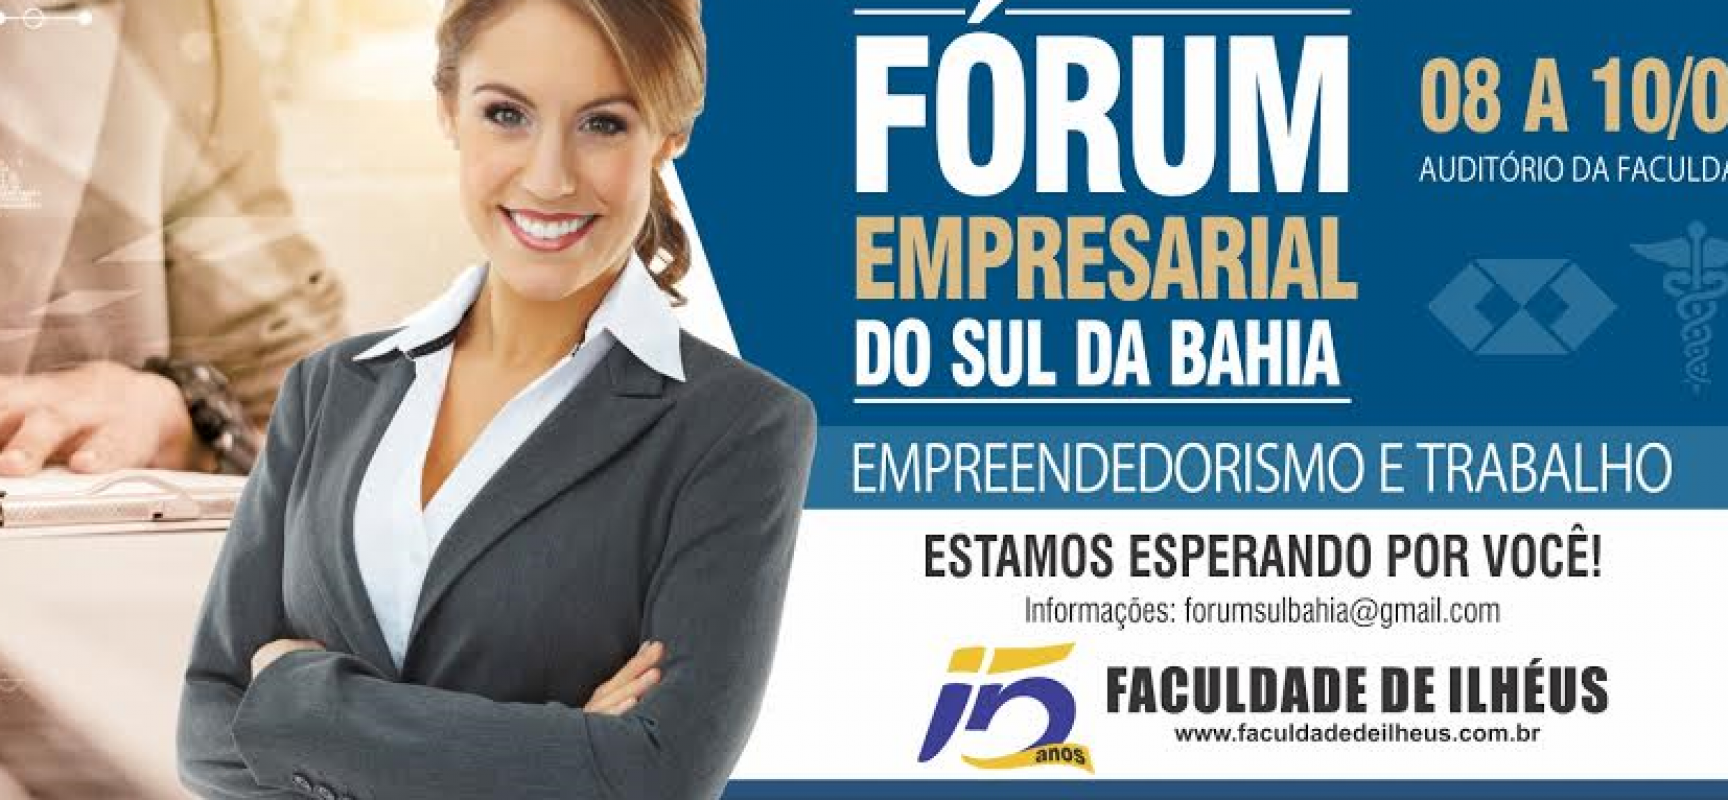 Fórum Empresarial do Sul da Bahia discutirá Empreendedorismo e Trabalho, em Ilhéus